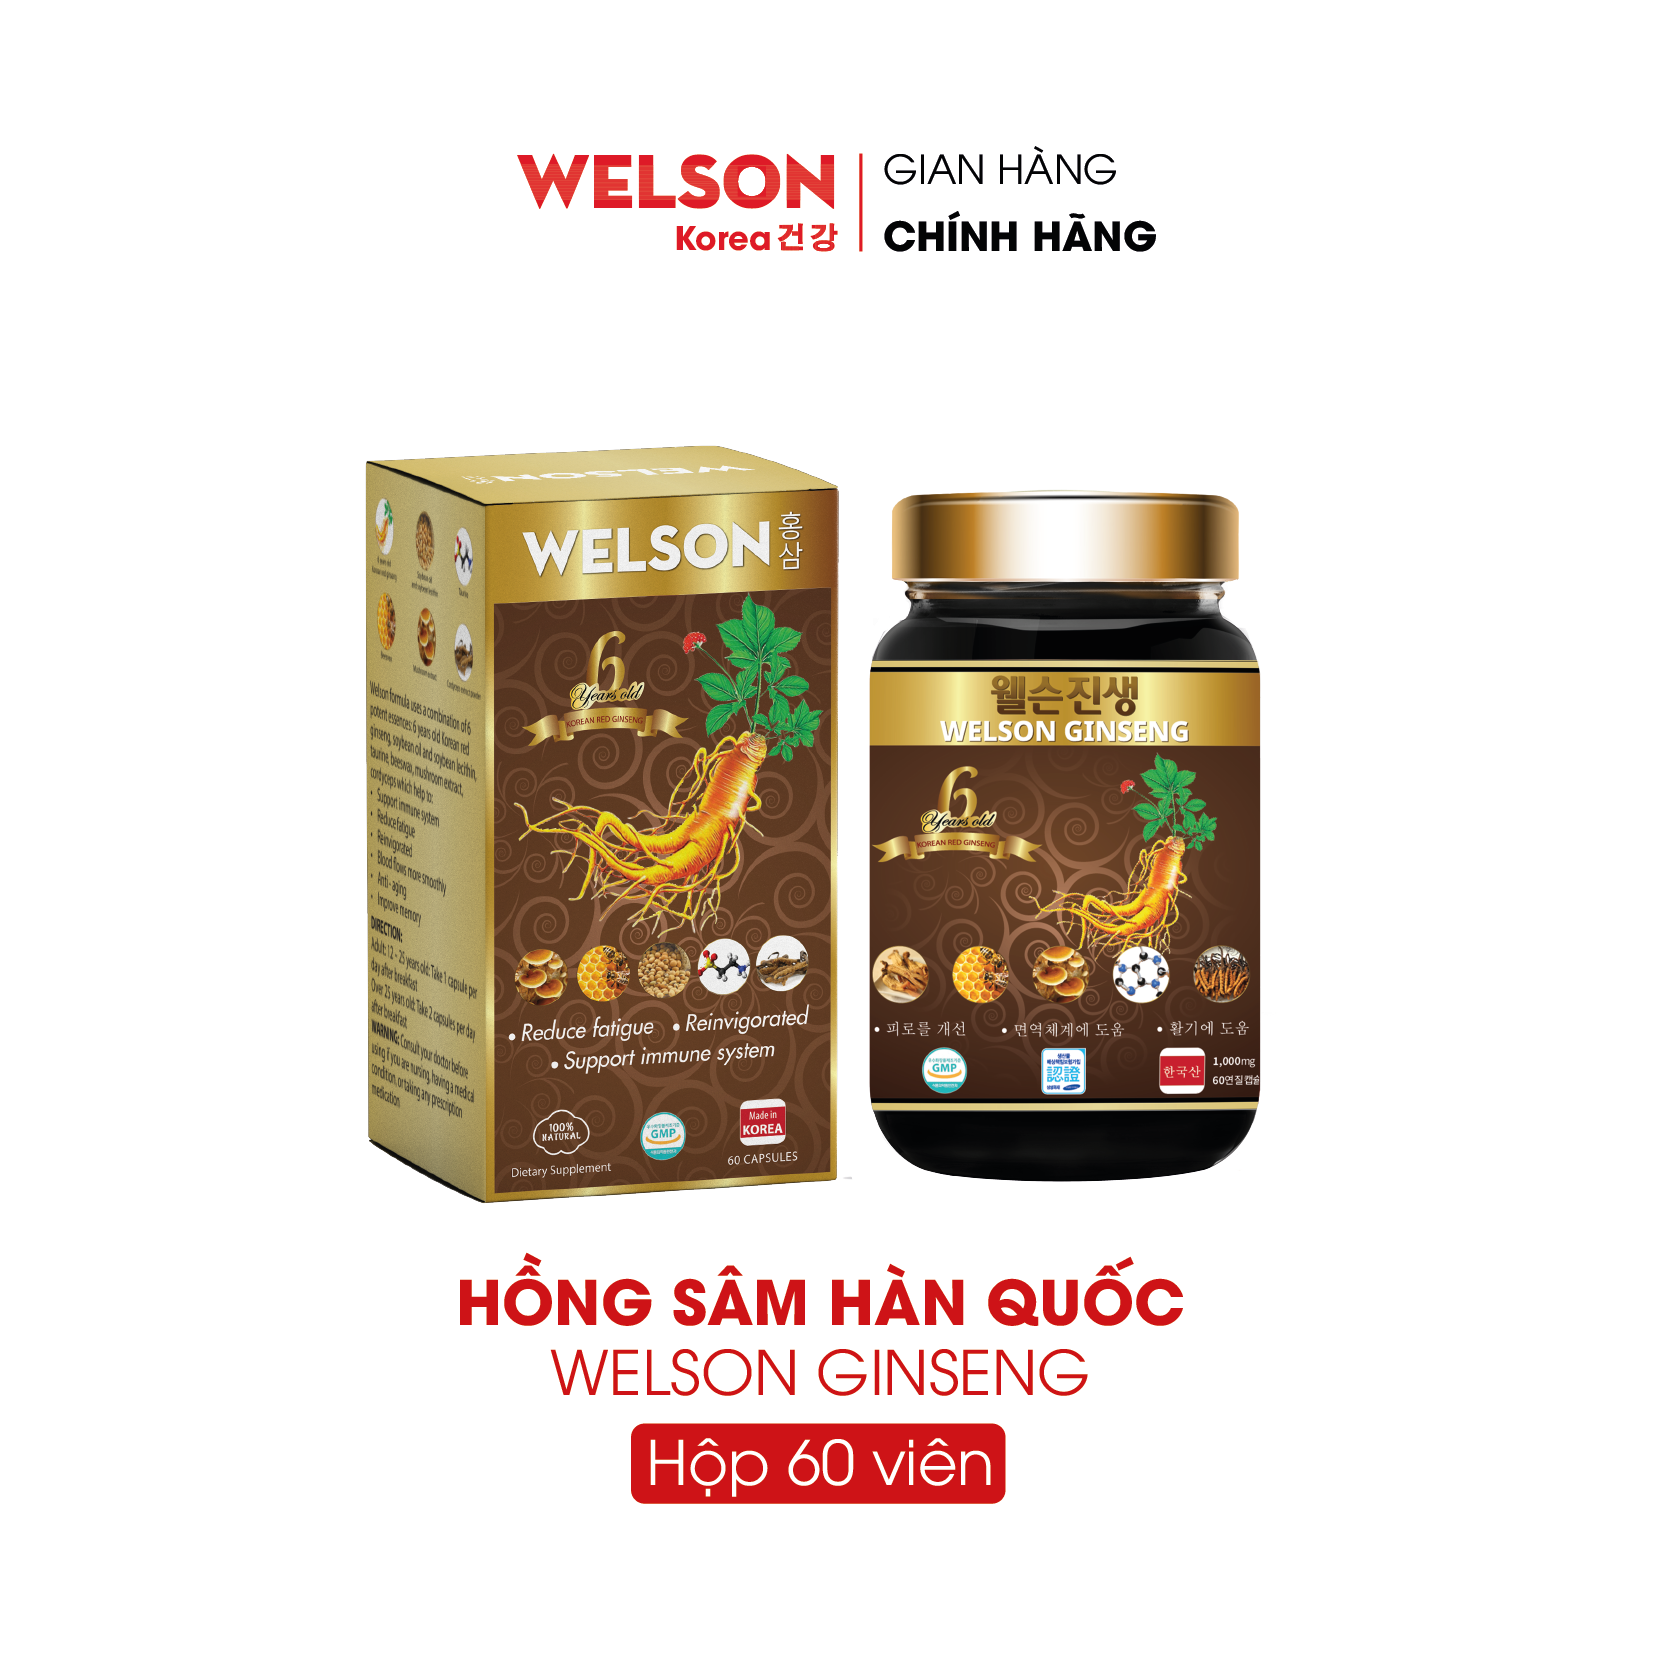 Hồng Sâm Hàn Quốc Welson Ginseng hộp 60 viên